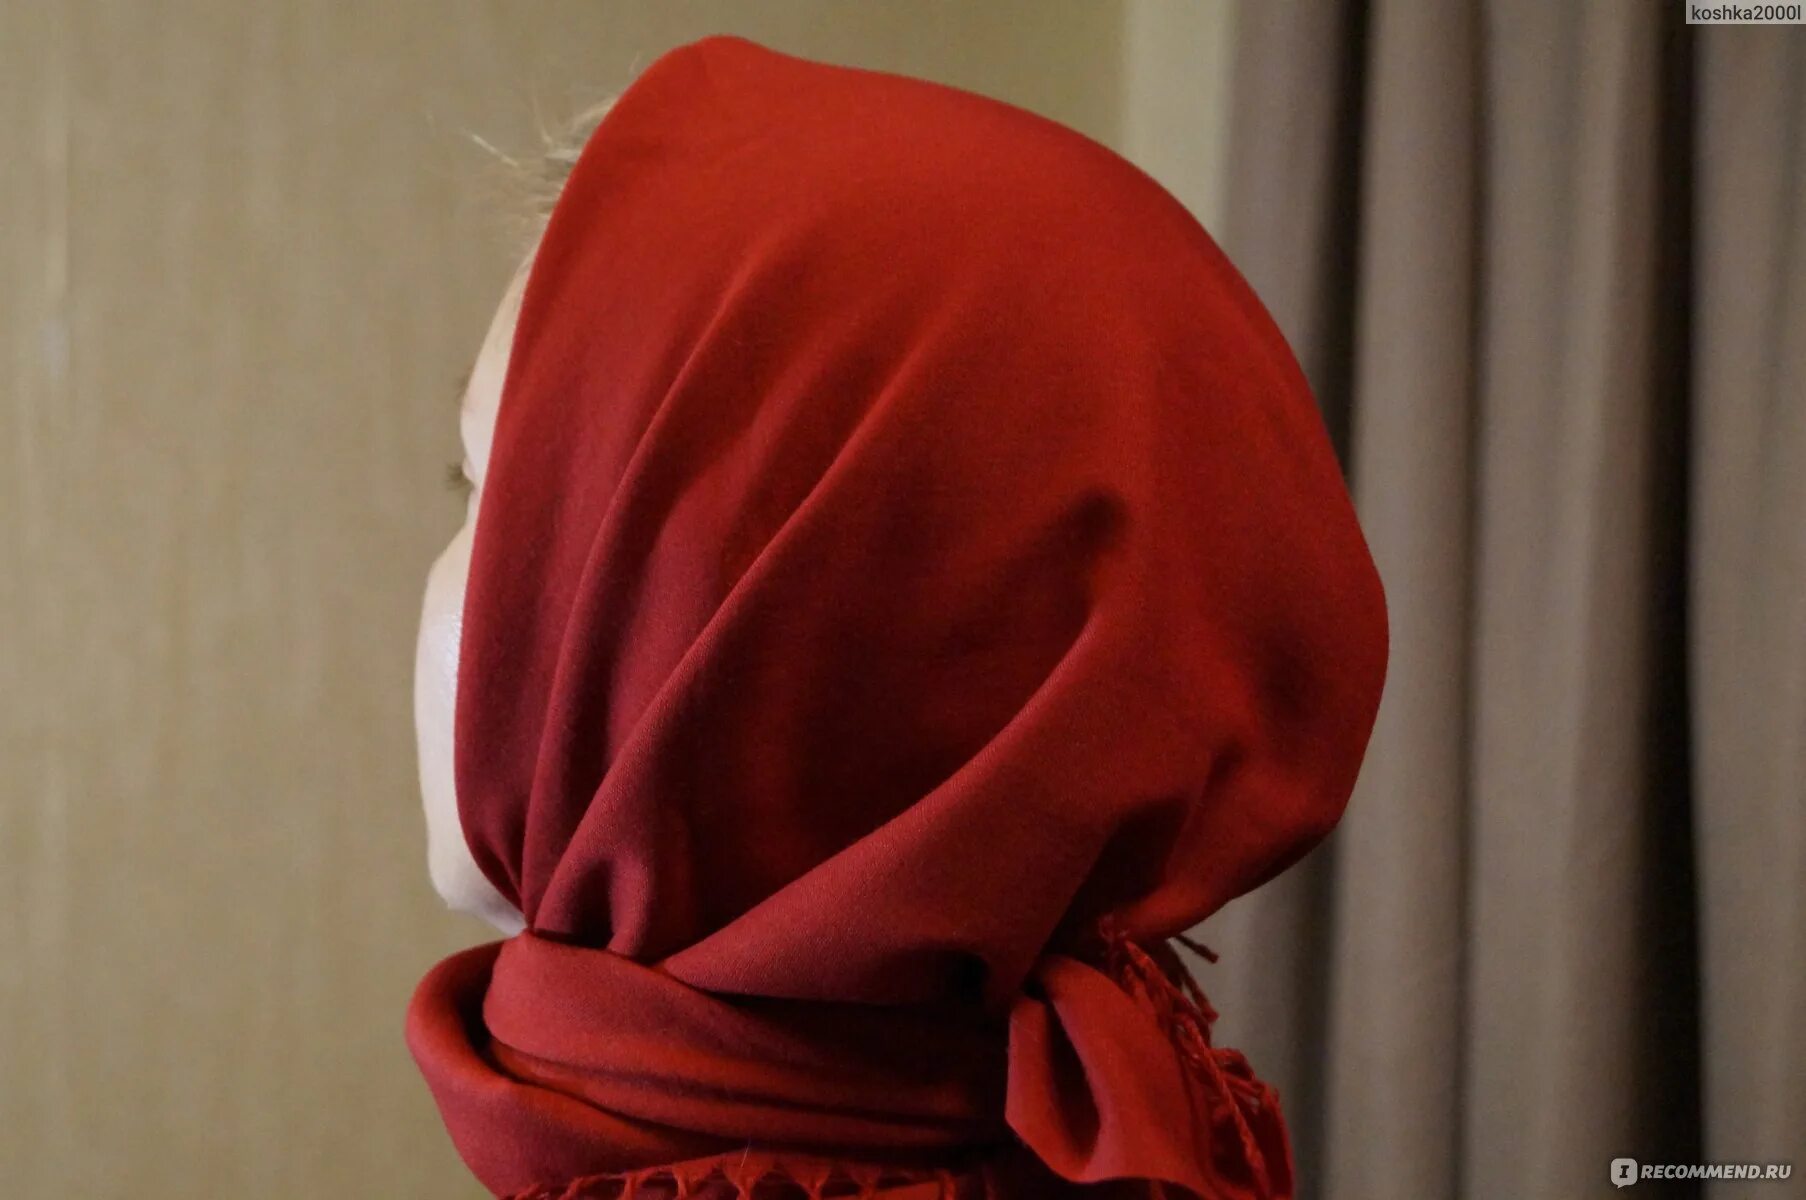 Падающий платок. Красные платки. Красный платок фото. Фокус женщины с красным платочком видео. Падал платок имбирь вид 2 фото на людях.